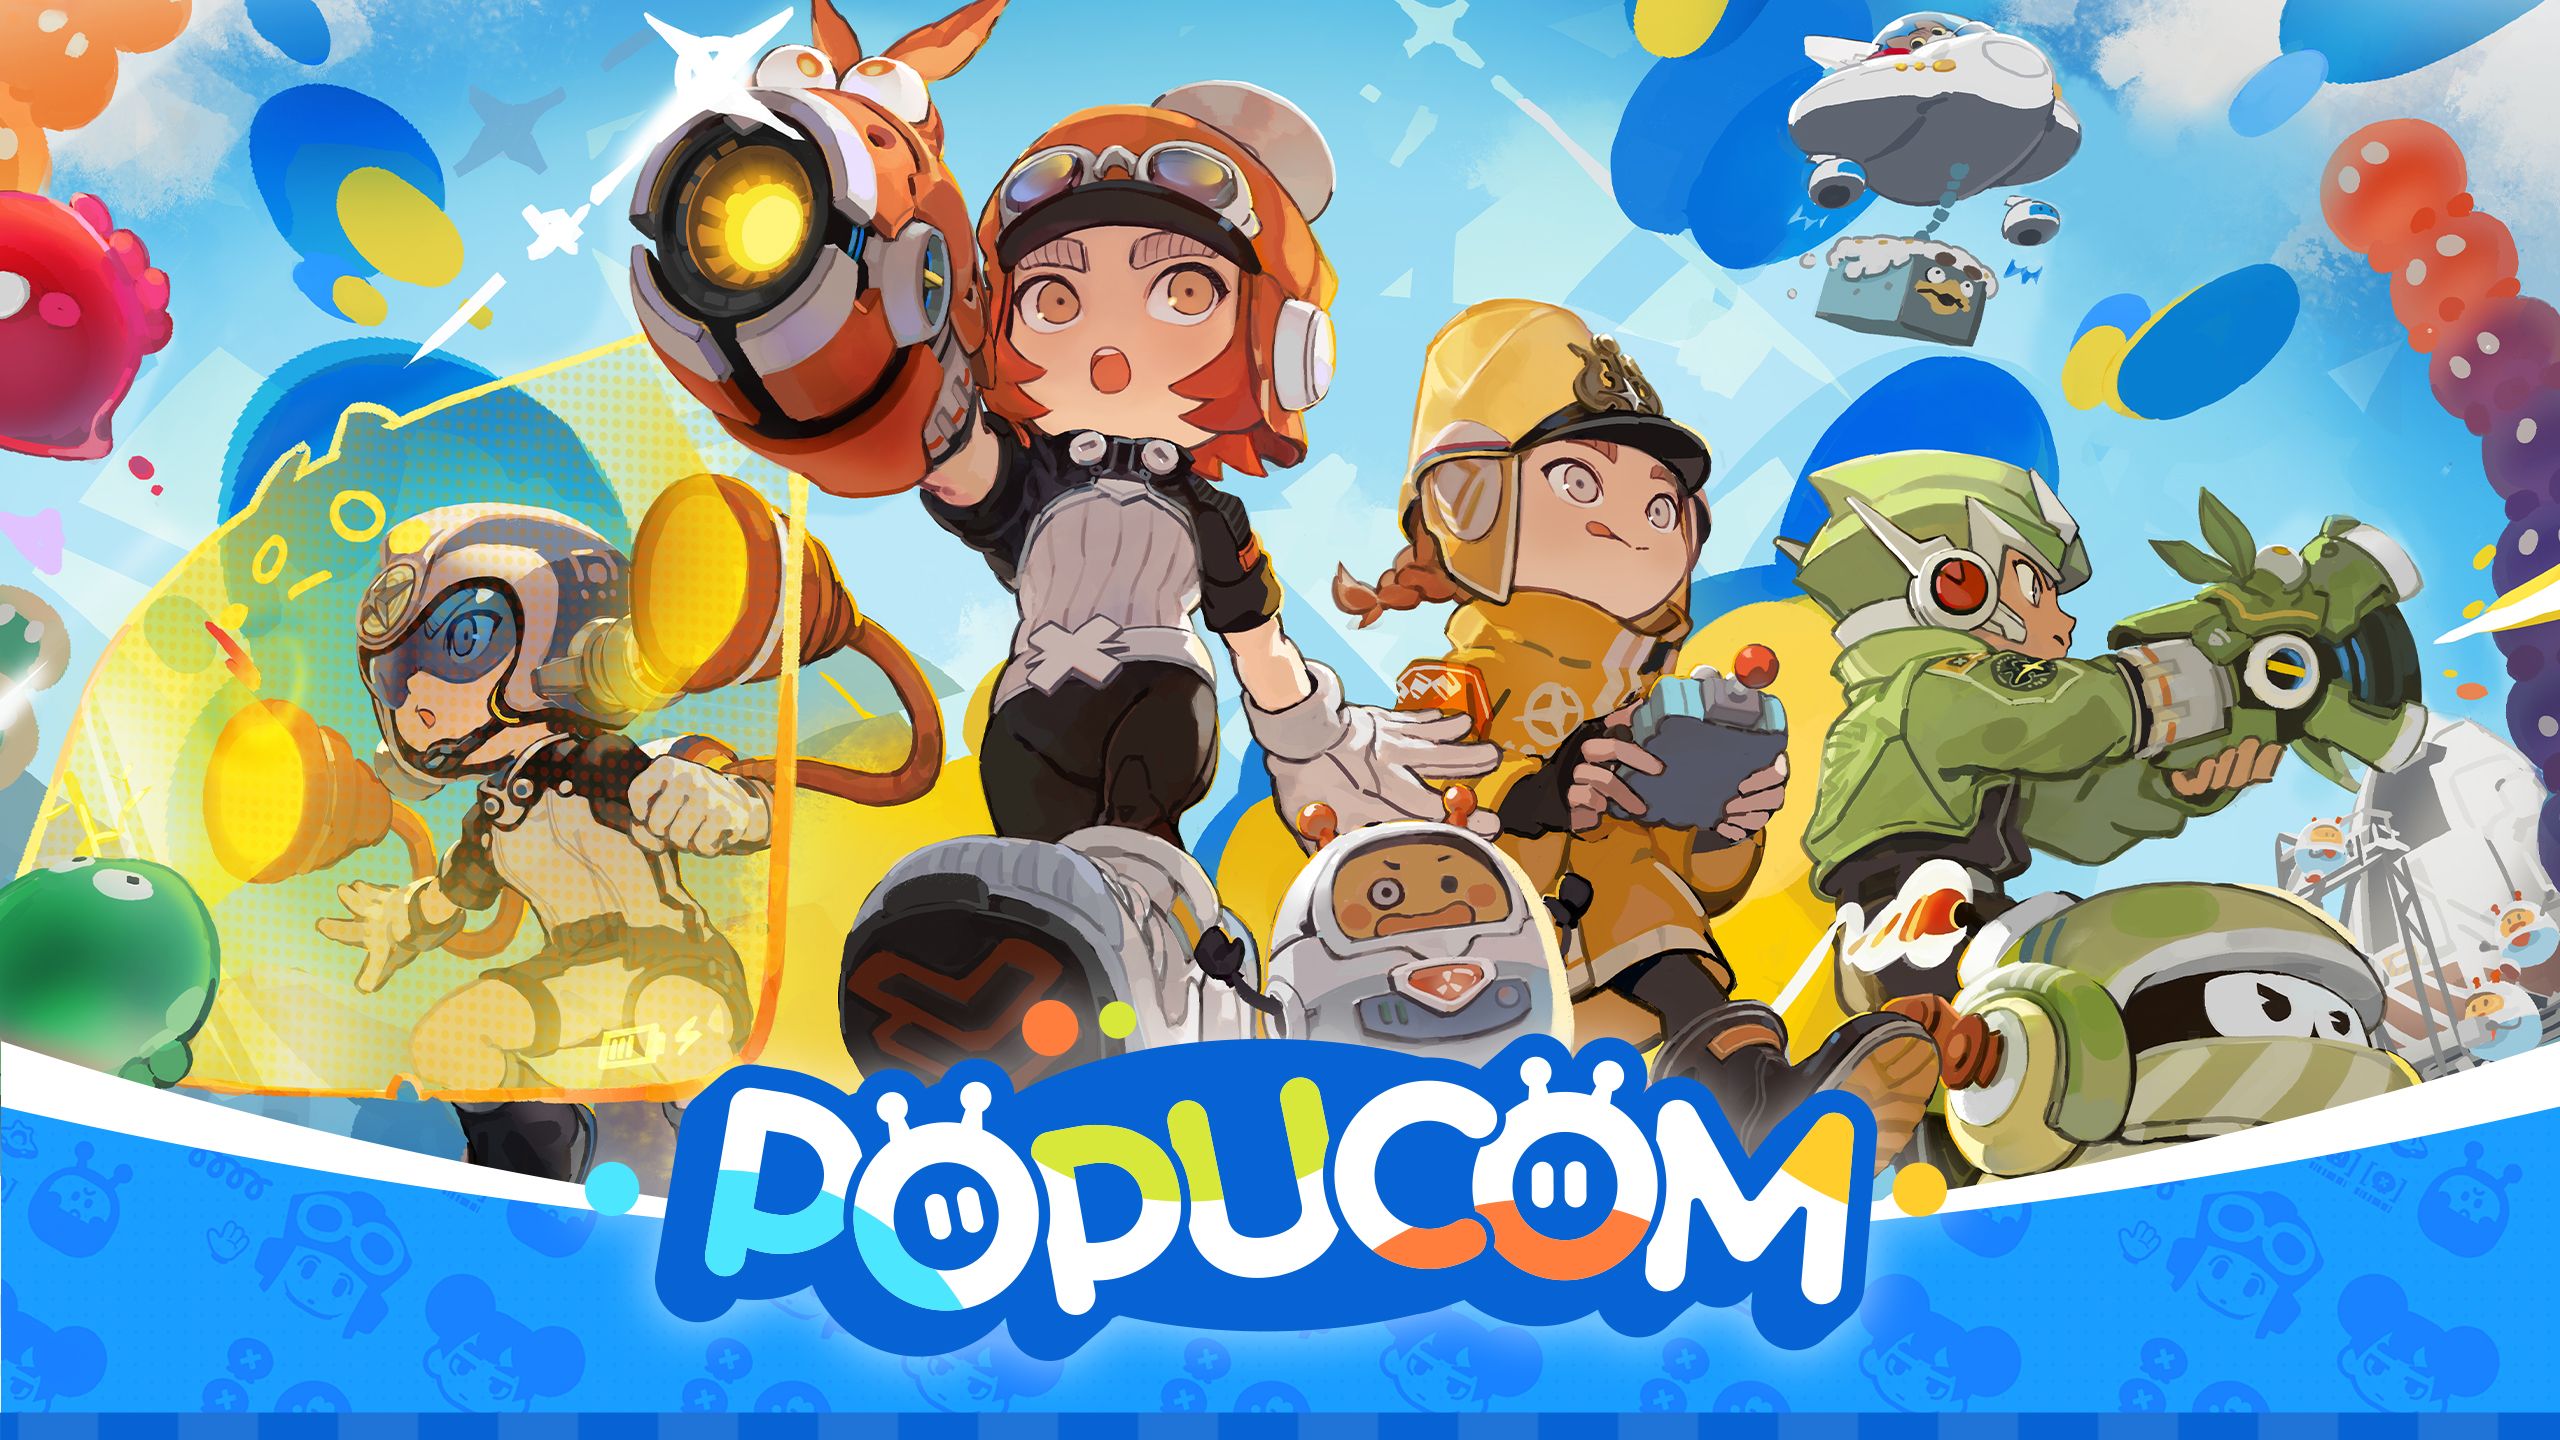 Popucom, annunciato il puzzle-platform cooperativo per PC, PS4 e PS5 